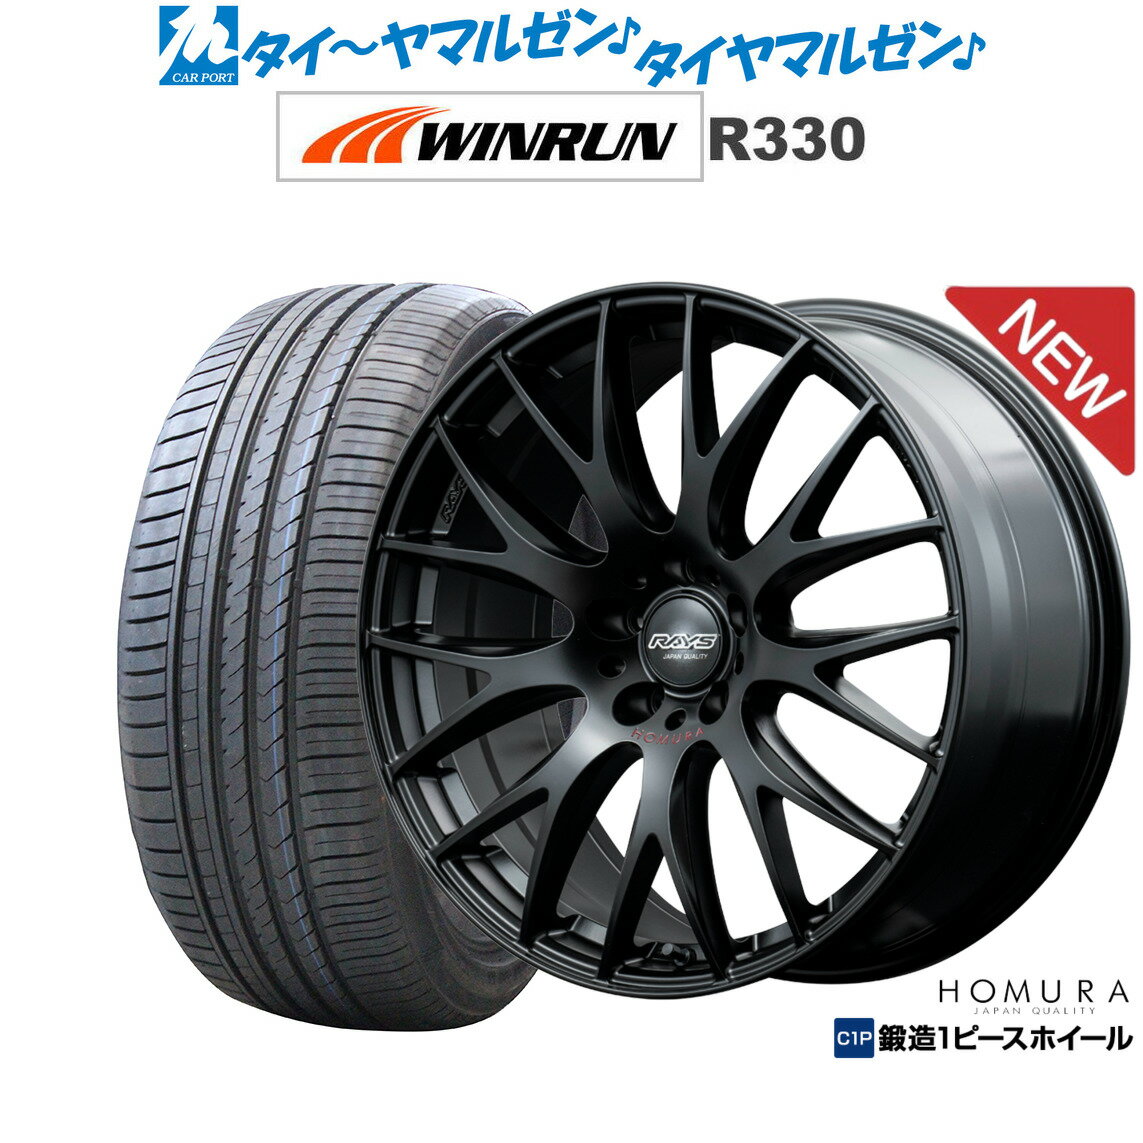 新品 サマータイヤ ホイール4本セットレイズ HOMURA ホムラ 2×9 Plus SPORT EDITION19インチ 7.5JWINRUN ウインラン R330215/35R19